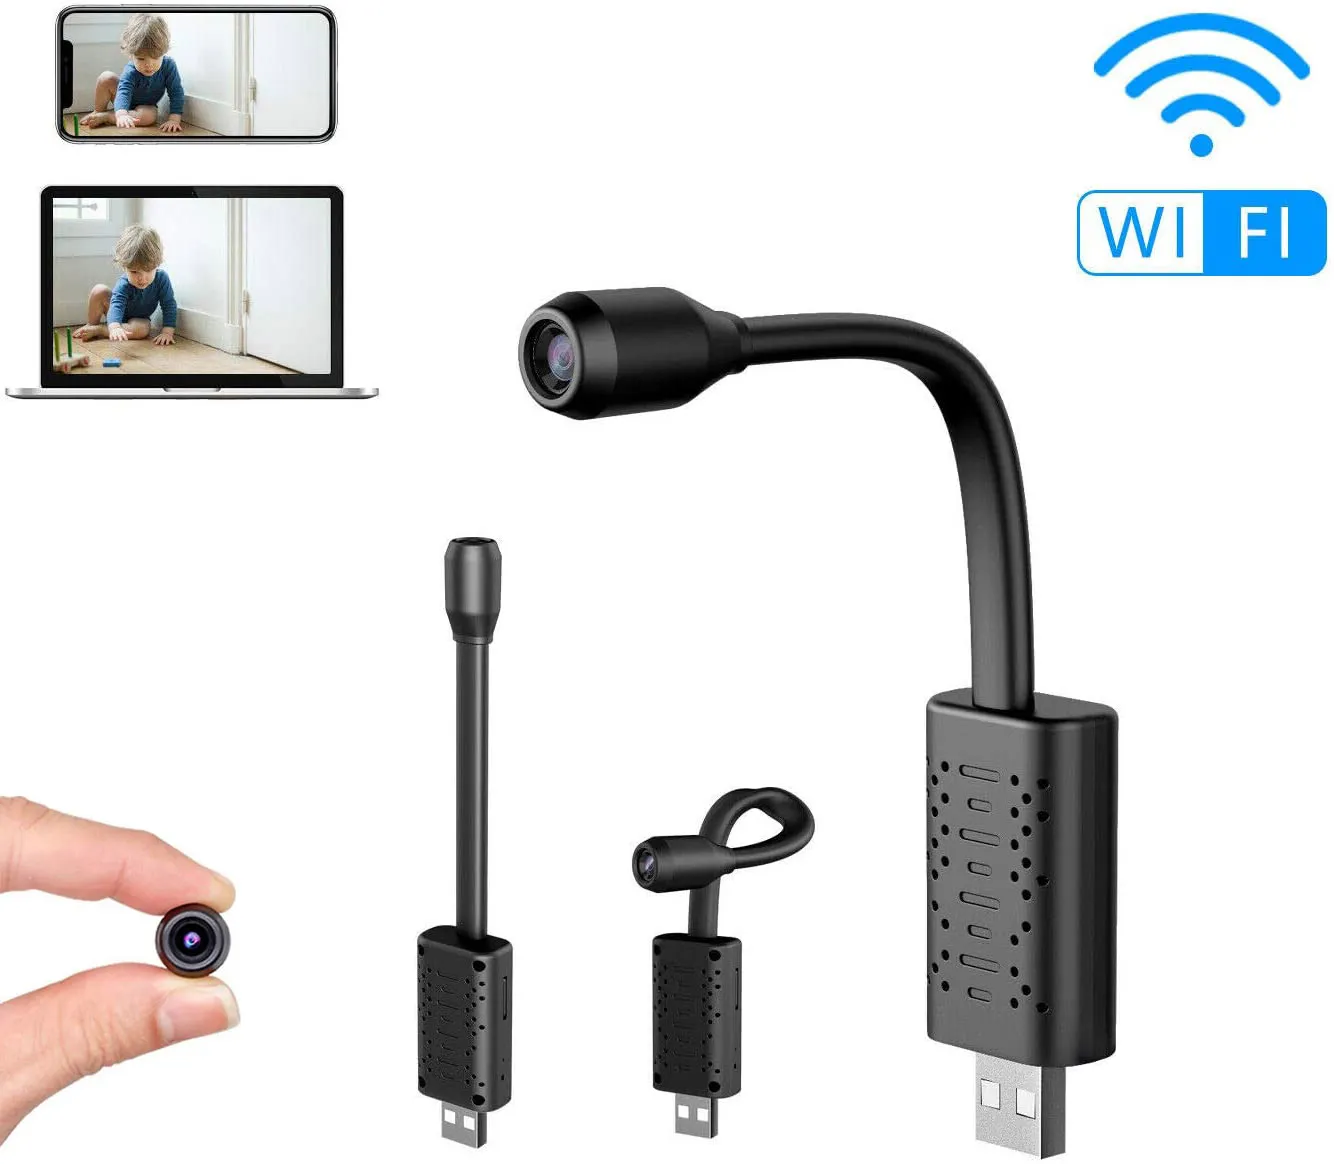 Mini videosorveglianza WiFi Video Surveillance Small CCTV IP Cameras Wireless HD Smart Home V380 Pro Record SD Cloud Storage Cloud Storage